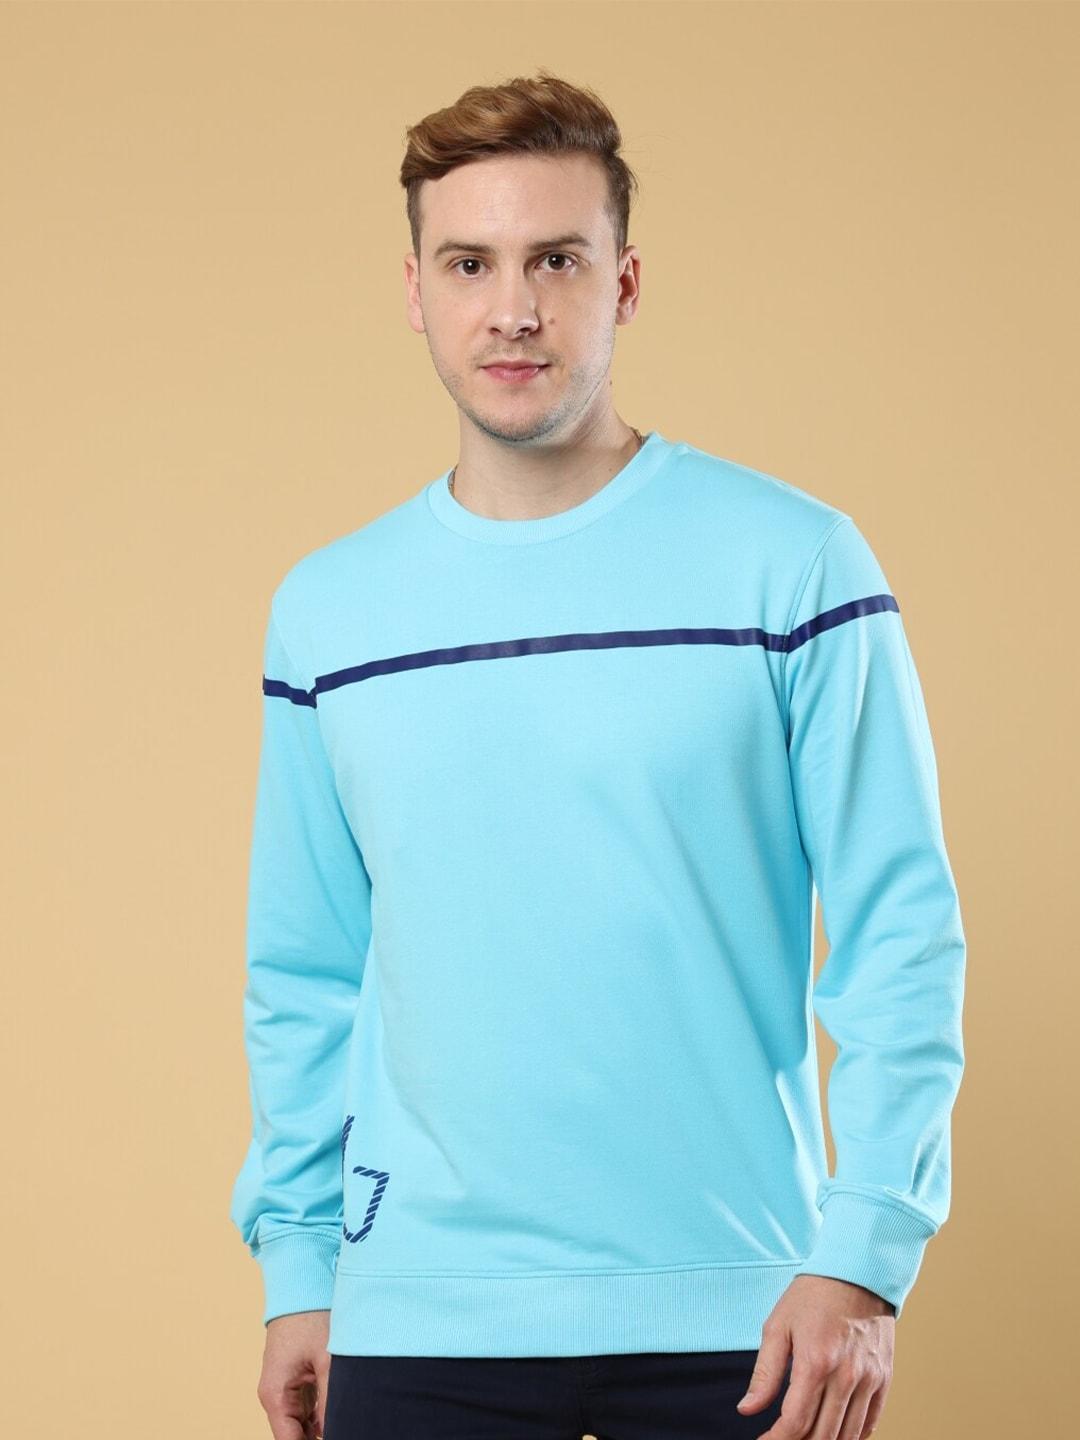 melvin-jones-striped-round-neck-pure-cotton-pullover-sweatshirt